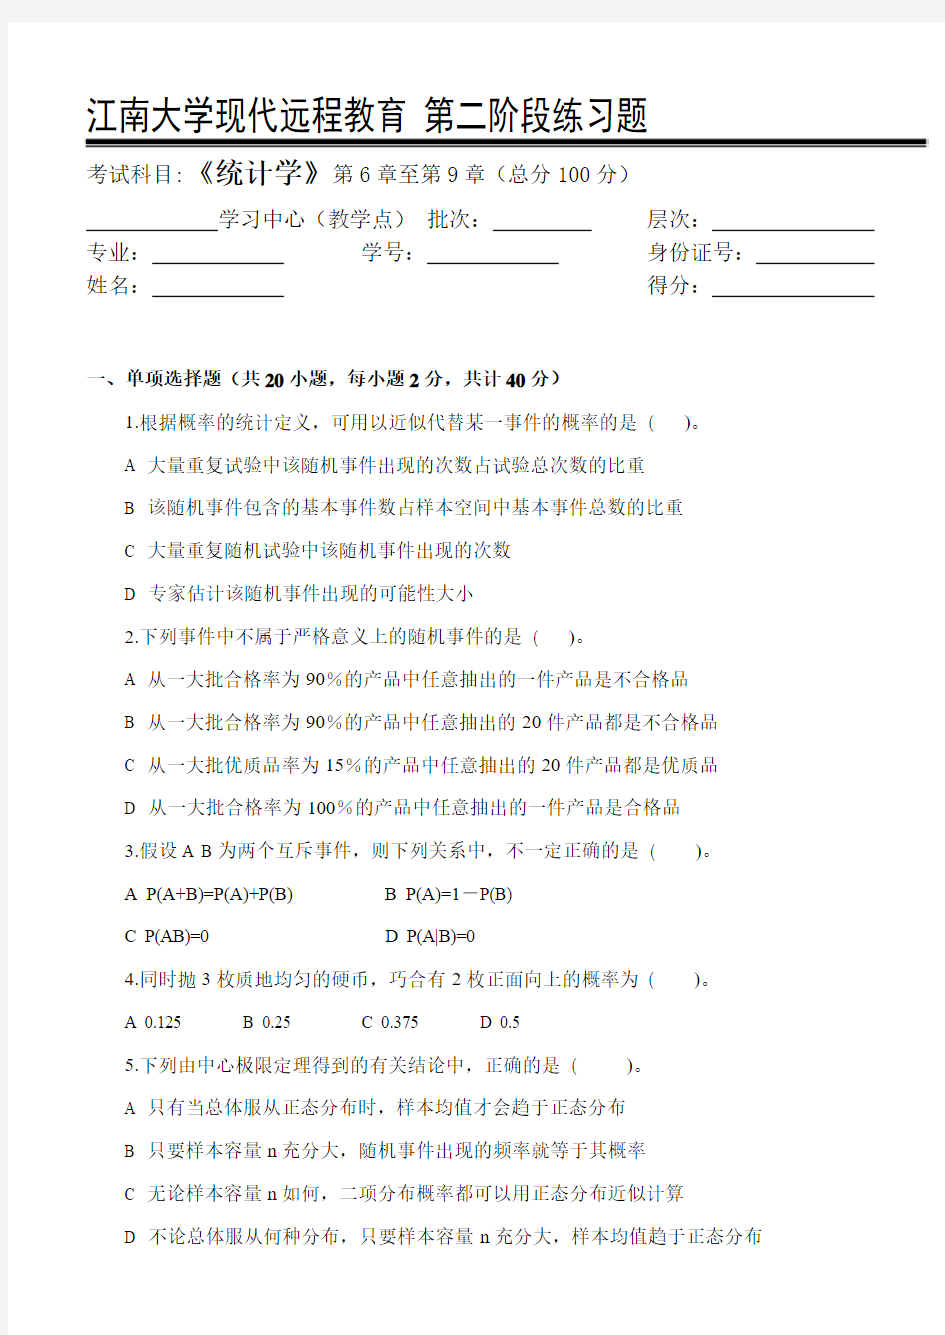 统计学第2阶段练习题 江南大学考试题库答案,答案在最后一页